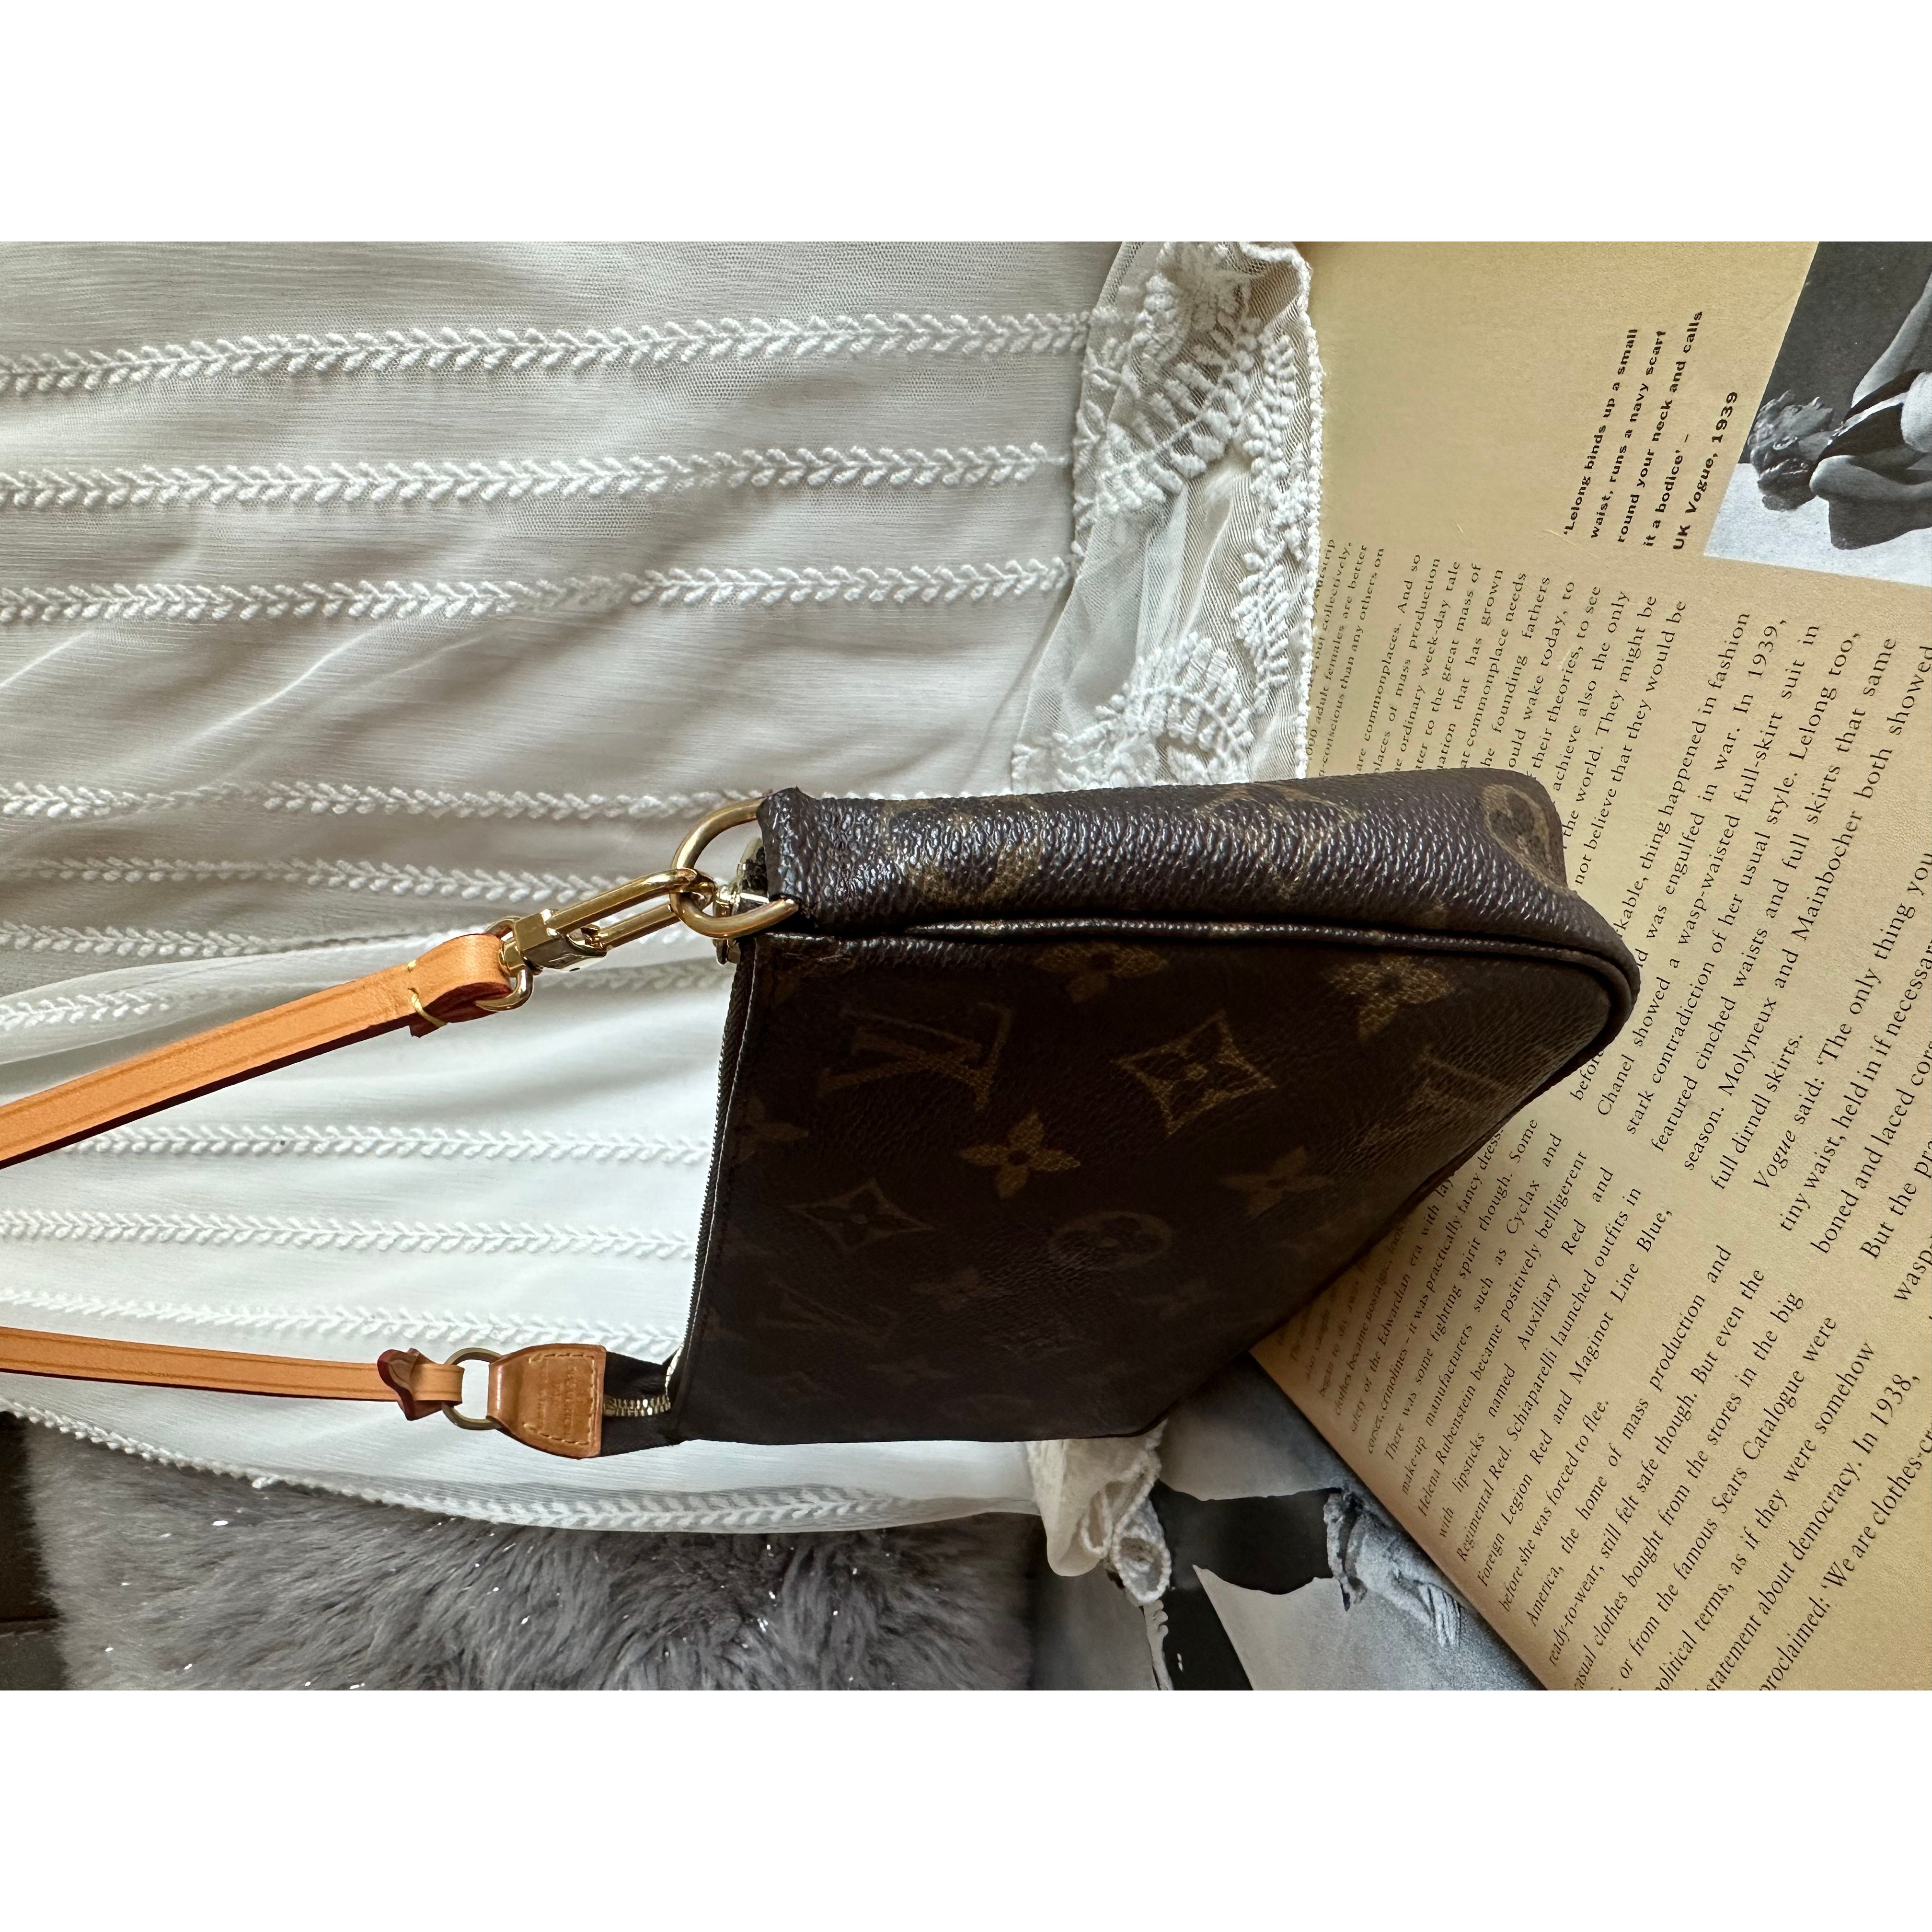 LOUIS VUITTON Pochette Accessories Monogram Used Pouch Handbag M51980 –  VINTAGE MODE JP